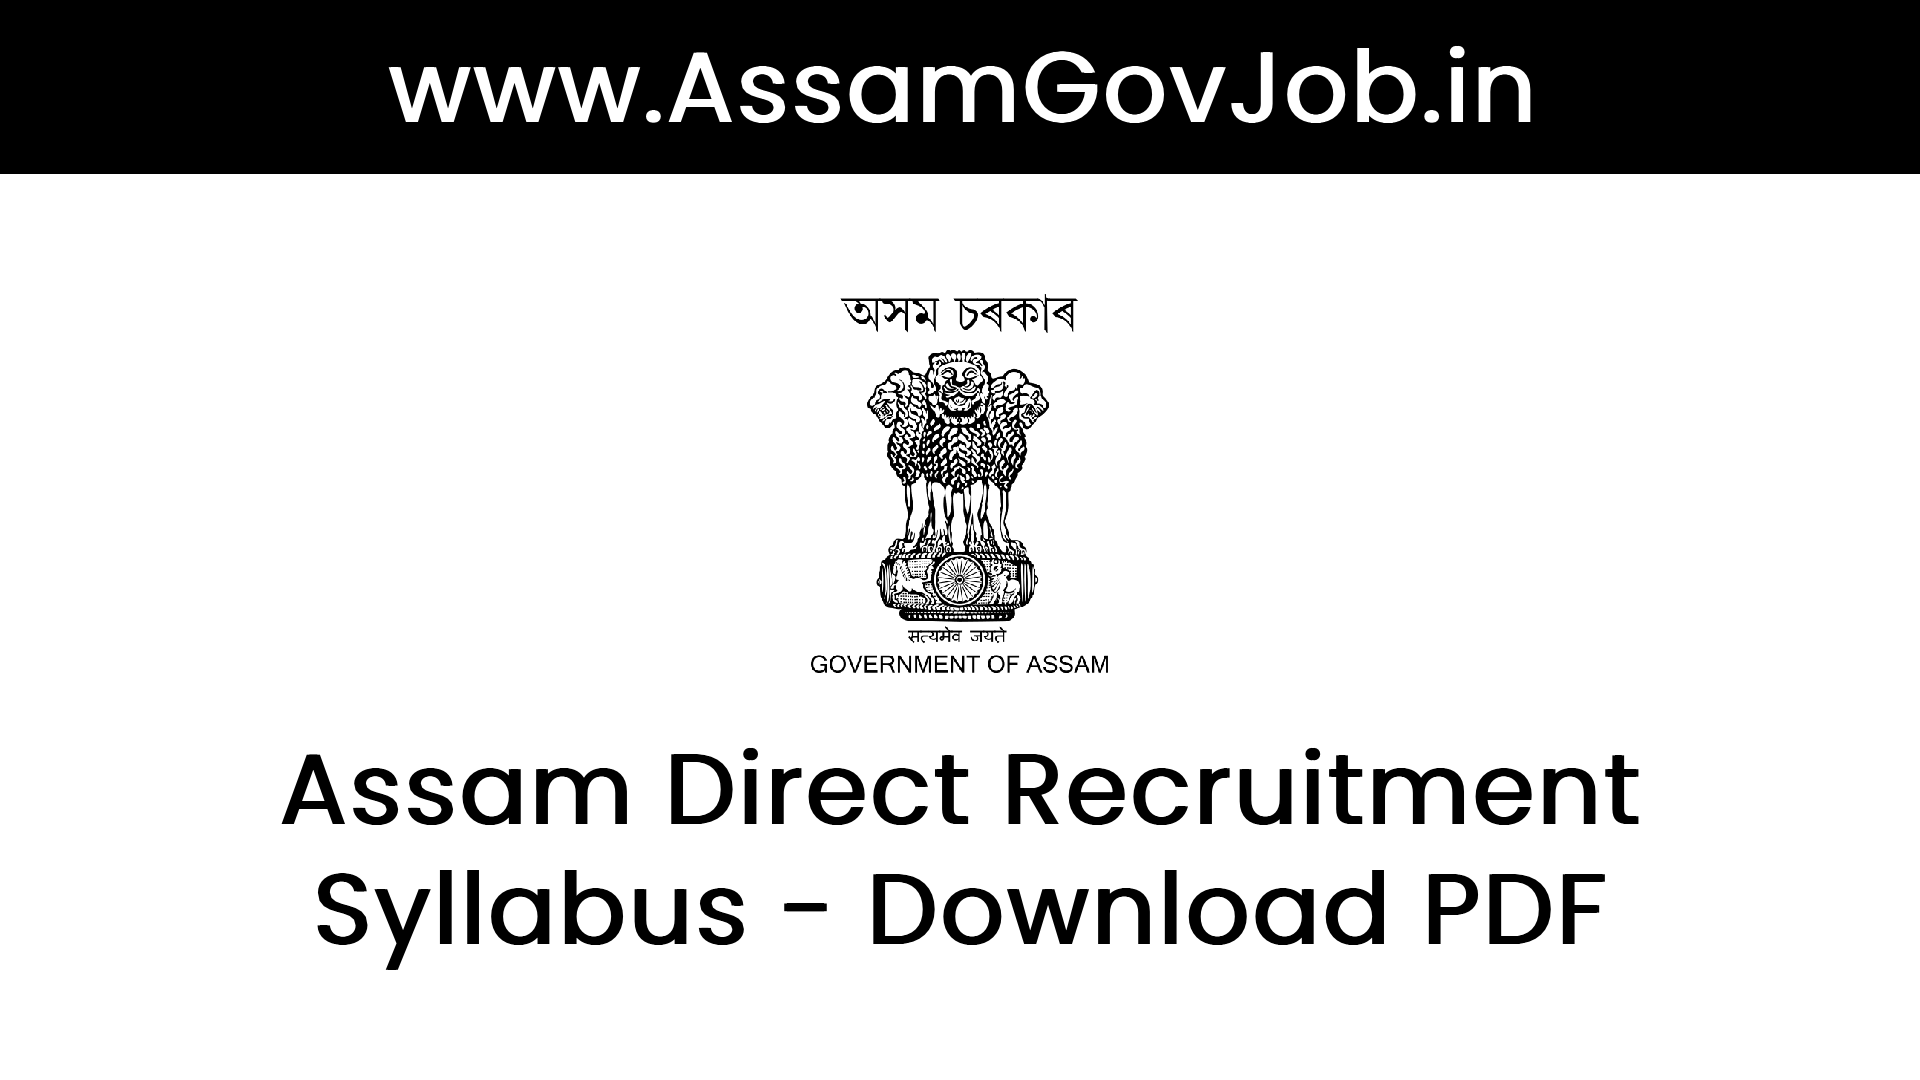 Assam Direct Recruitment Syllabus